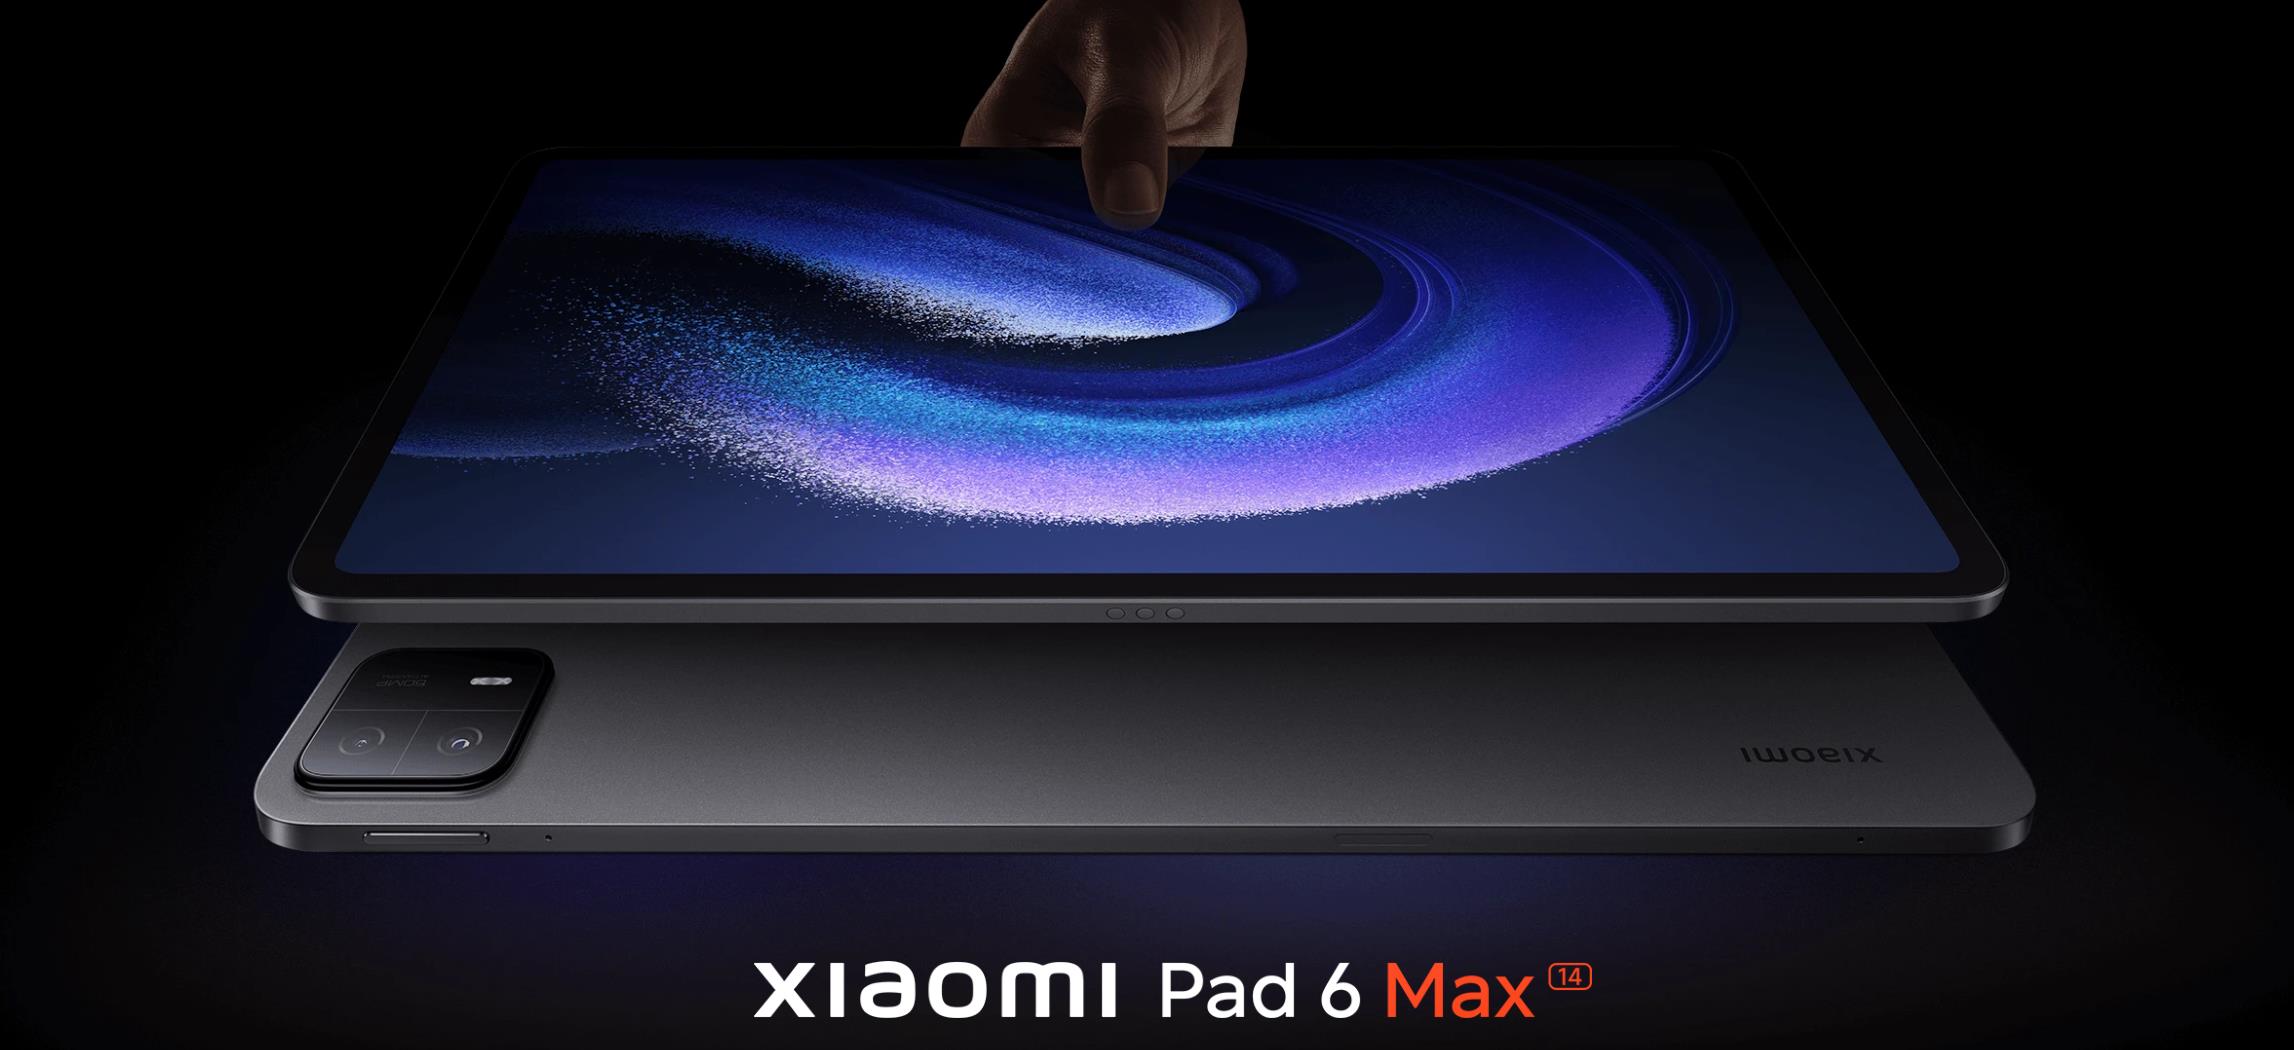 Xiaomi Pad 6 WiFi 256GB 8GB RAM Blue, price in Europe